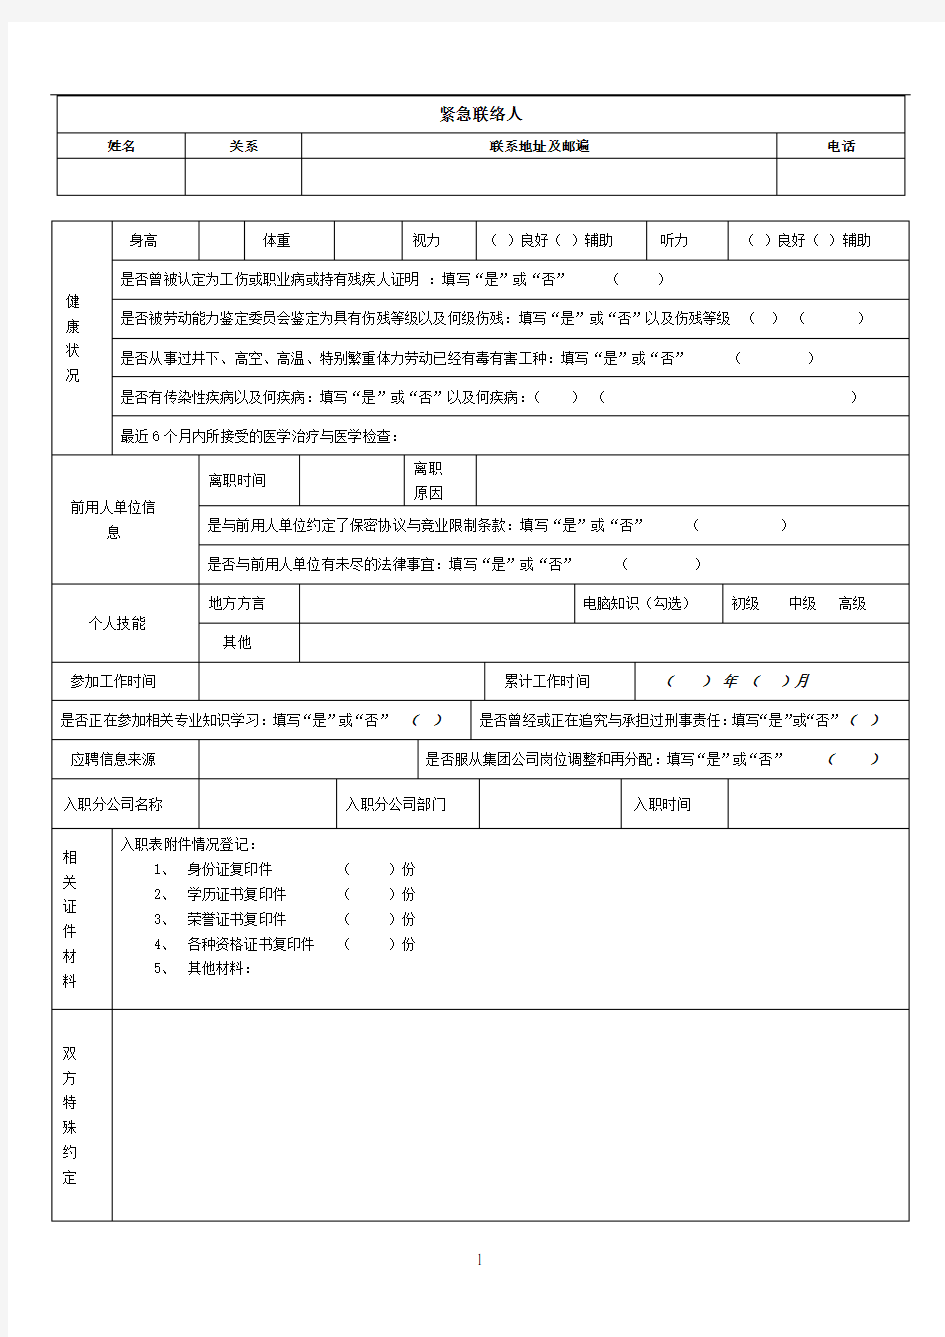 【范本】员工入职登记表(正式表)